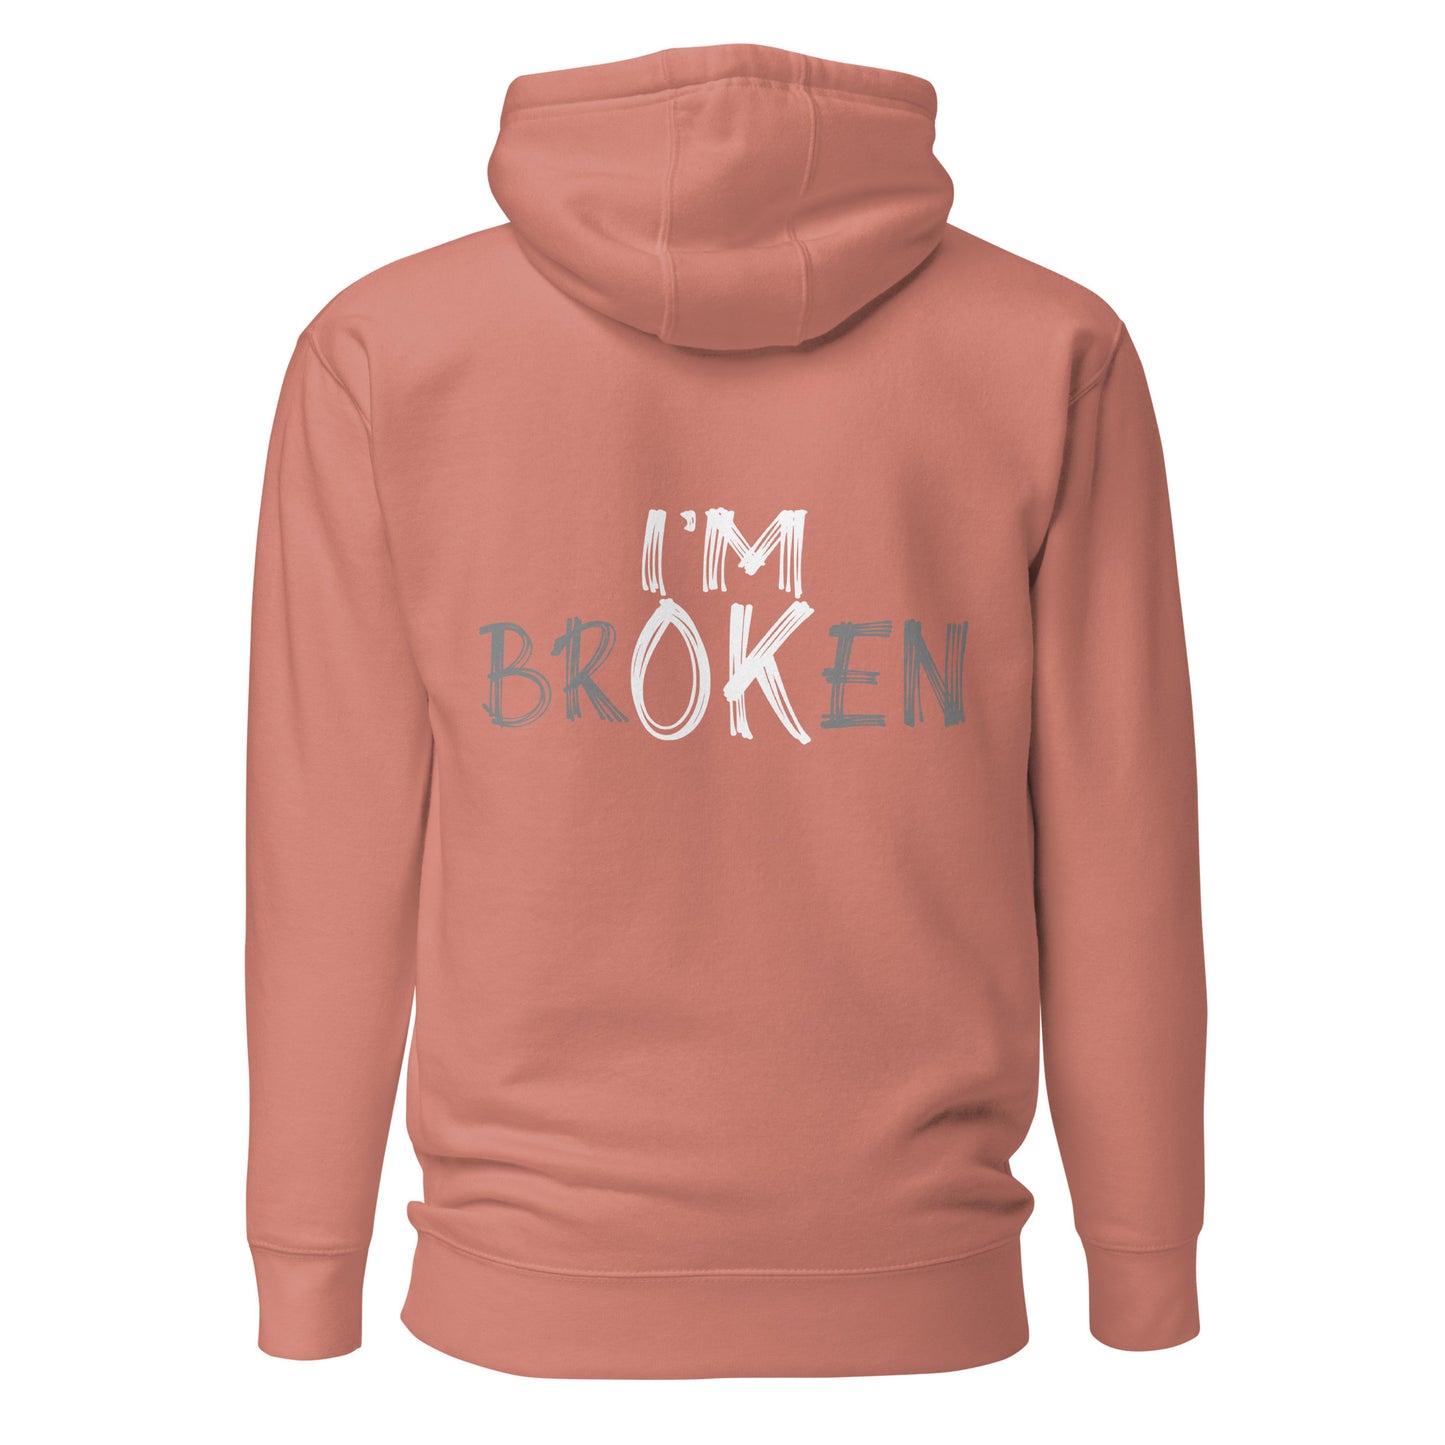 "I'm brOKen" Hoodie